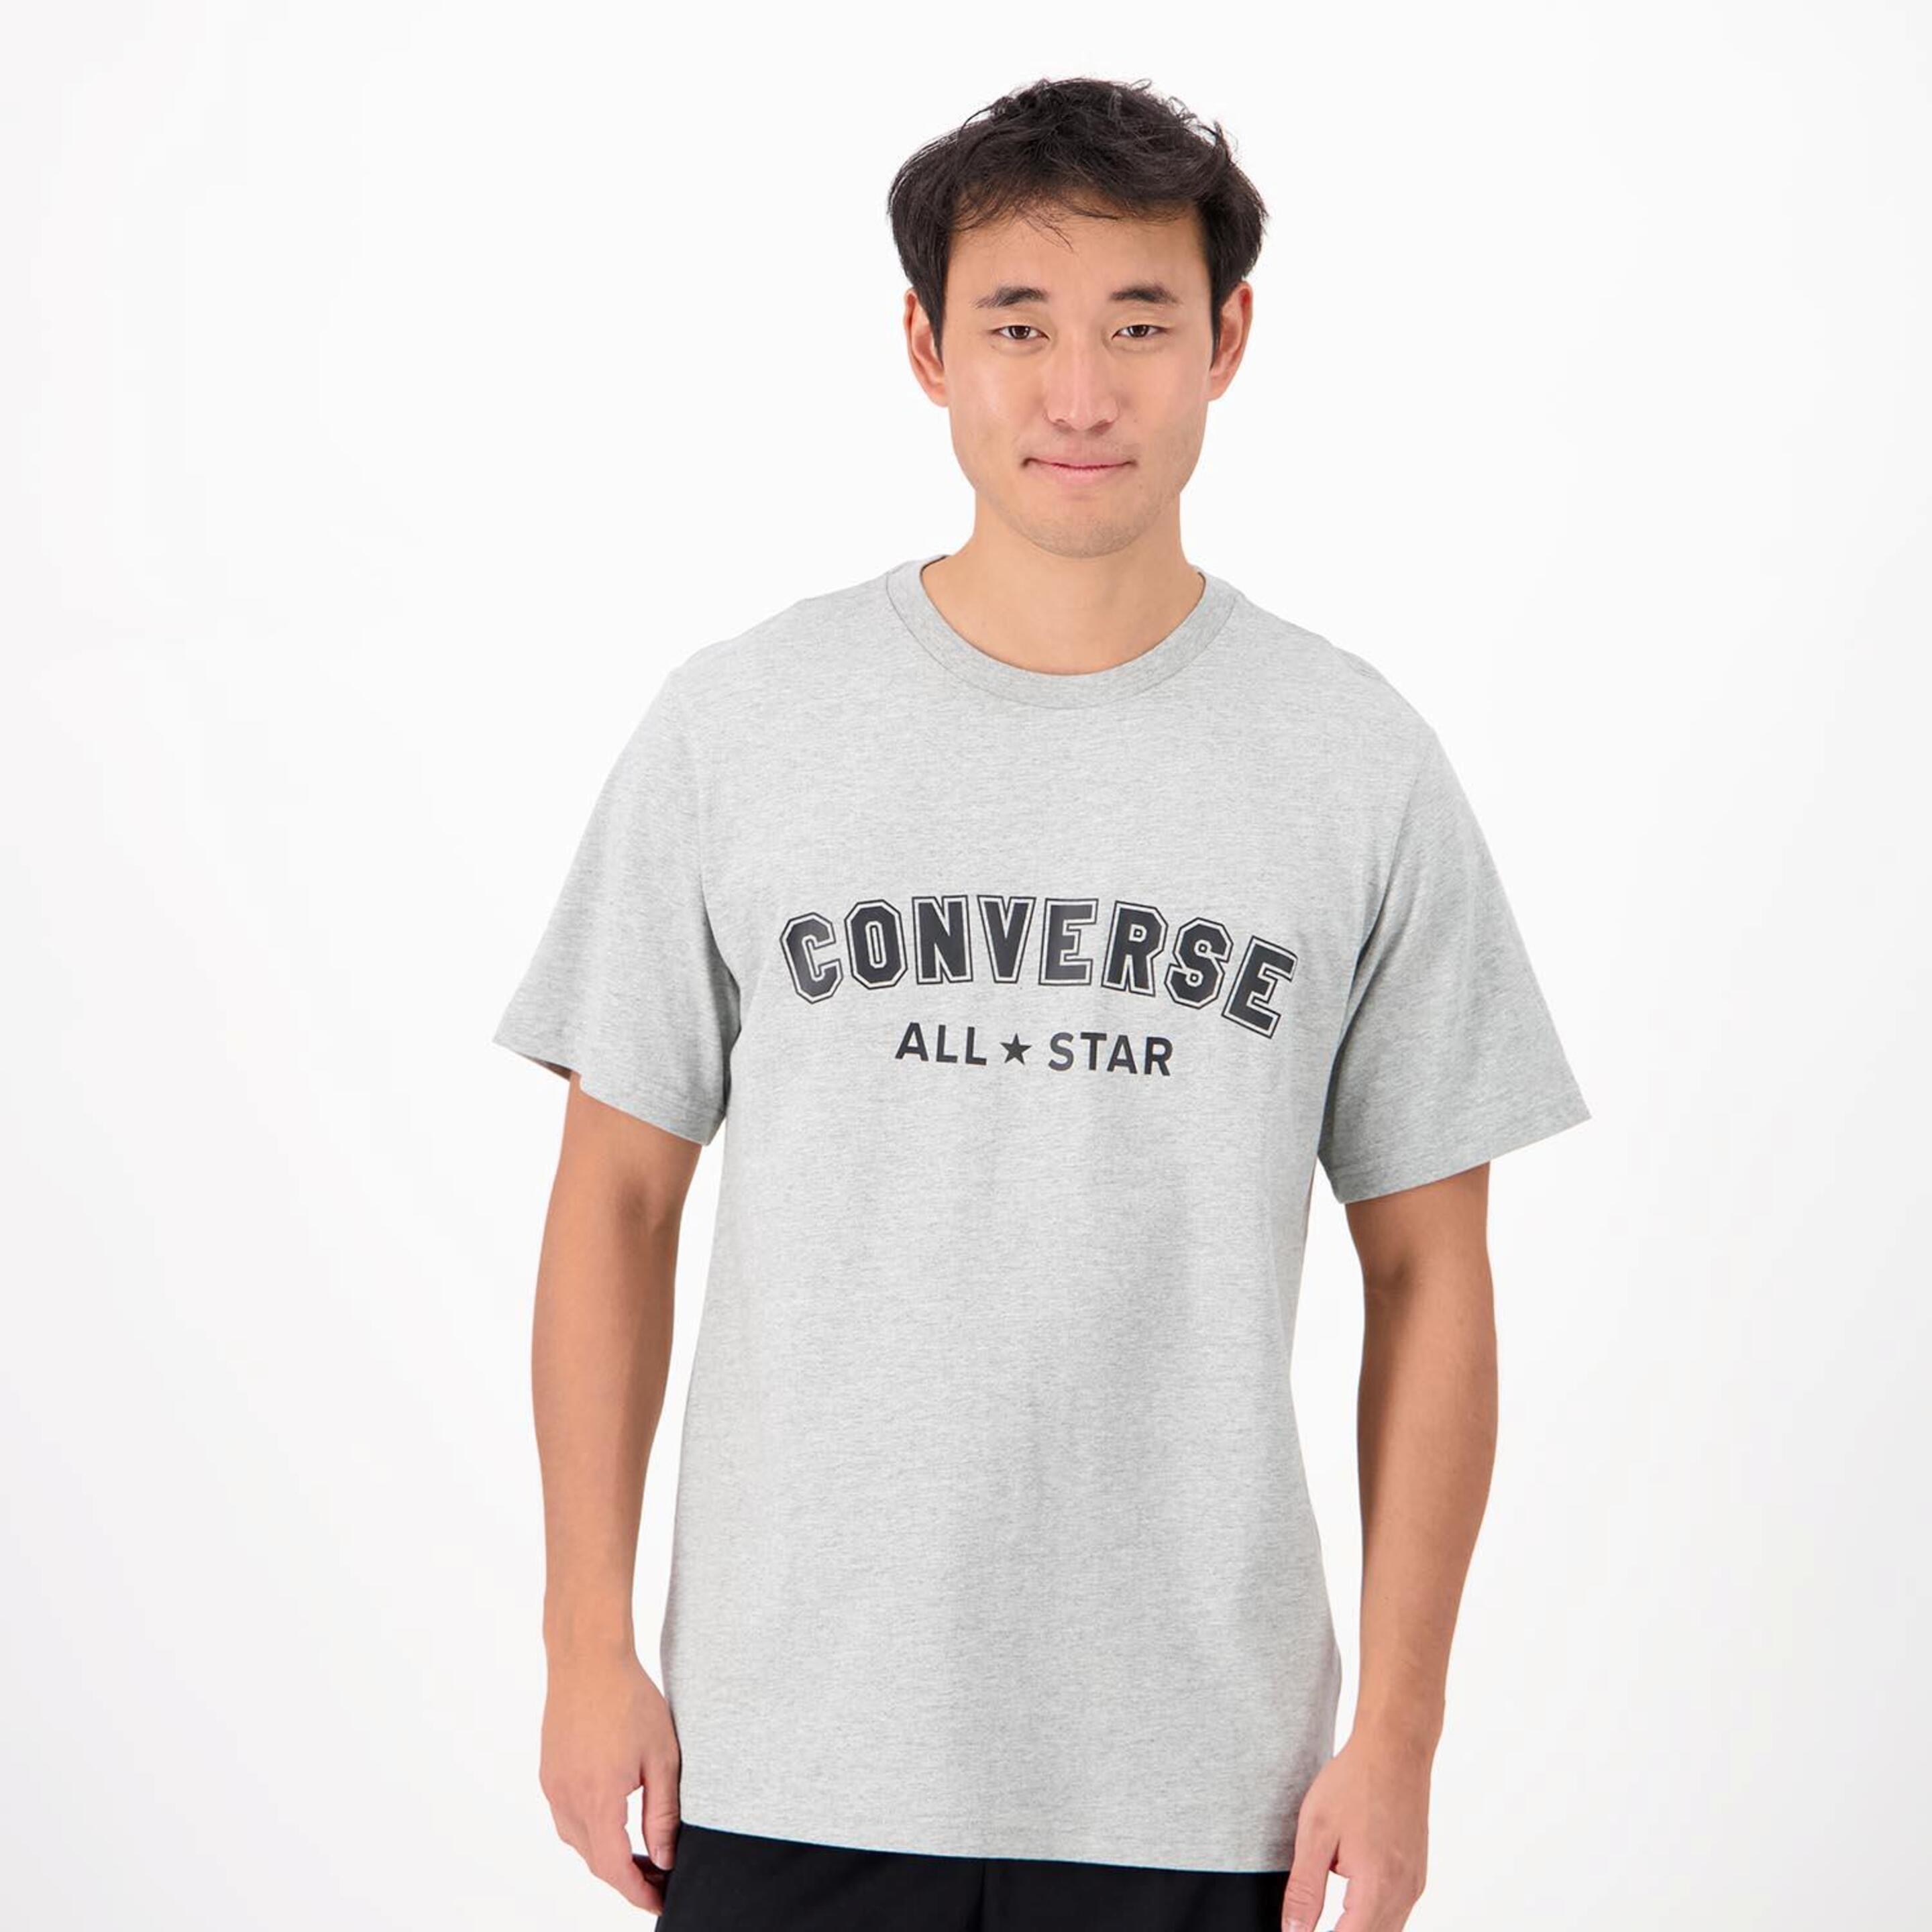 Converse All Star - gris - T-shirt Homem